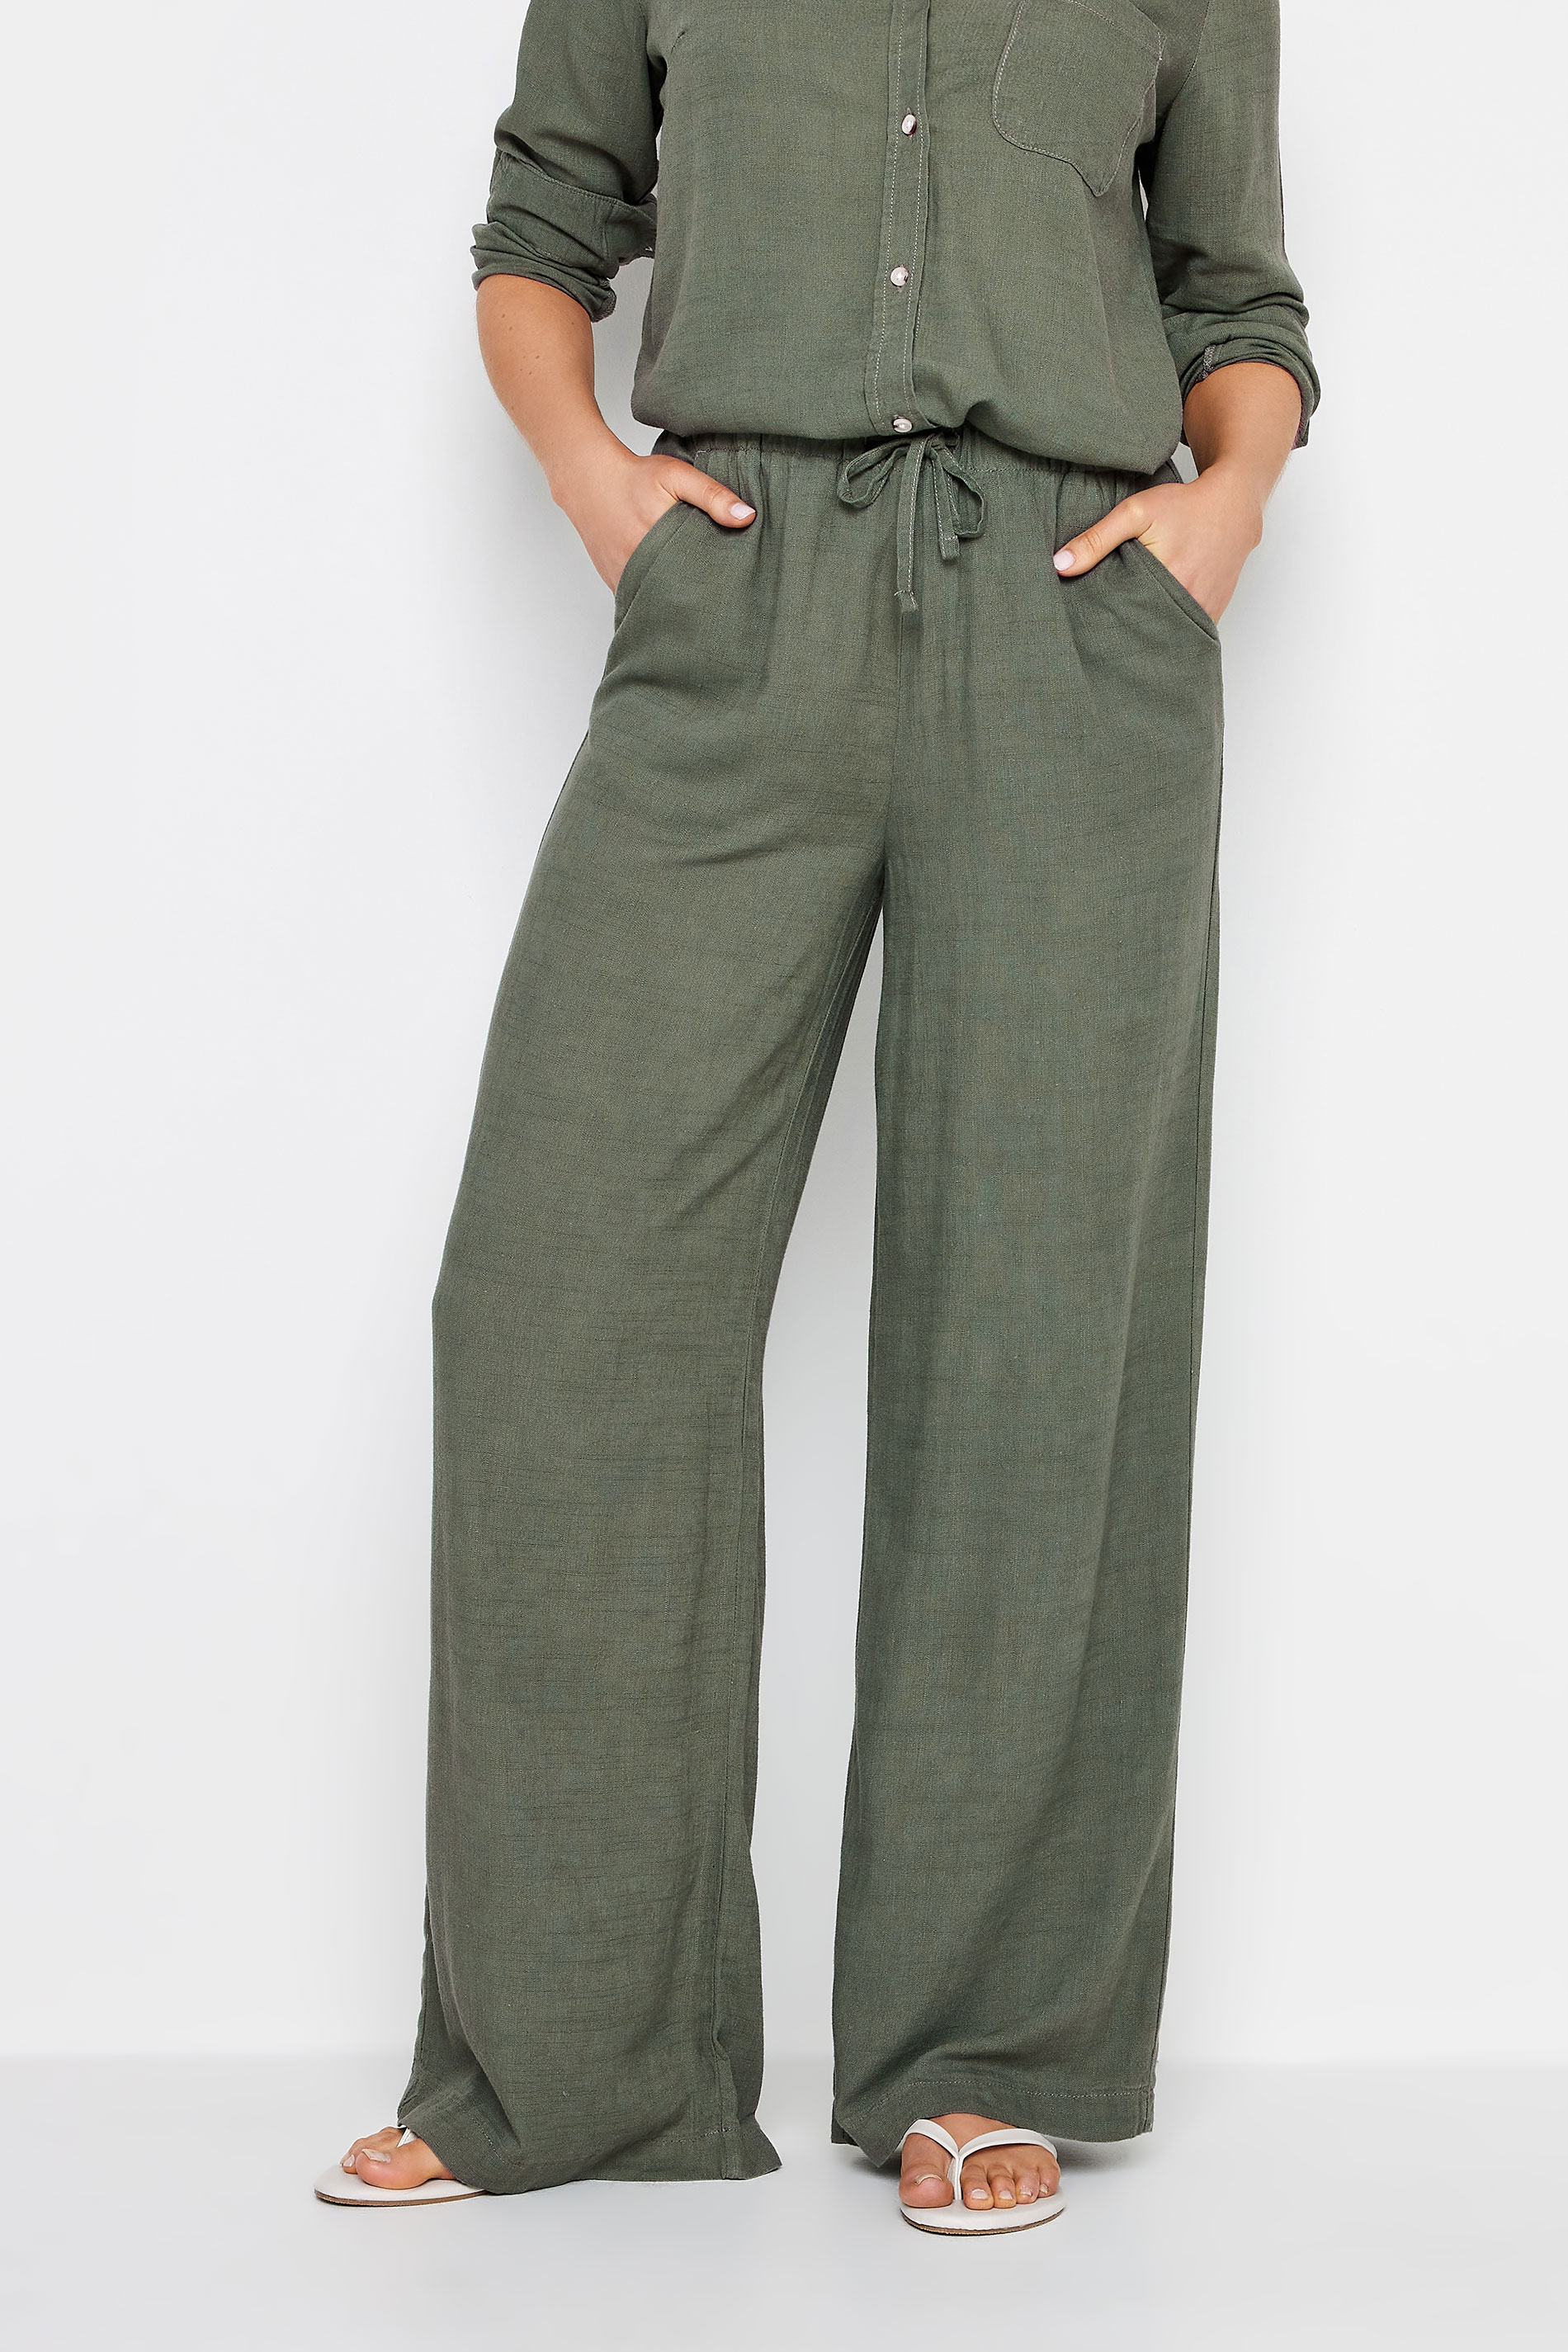 LTS Tall Womens Khaki Green Linen Tie Waist Wide Leg Trousers | Long Tall Sally 3